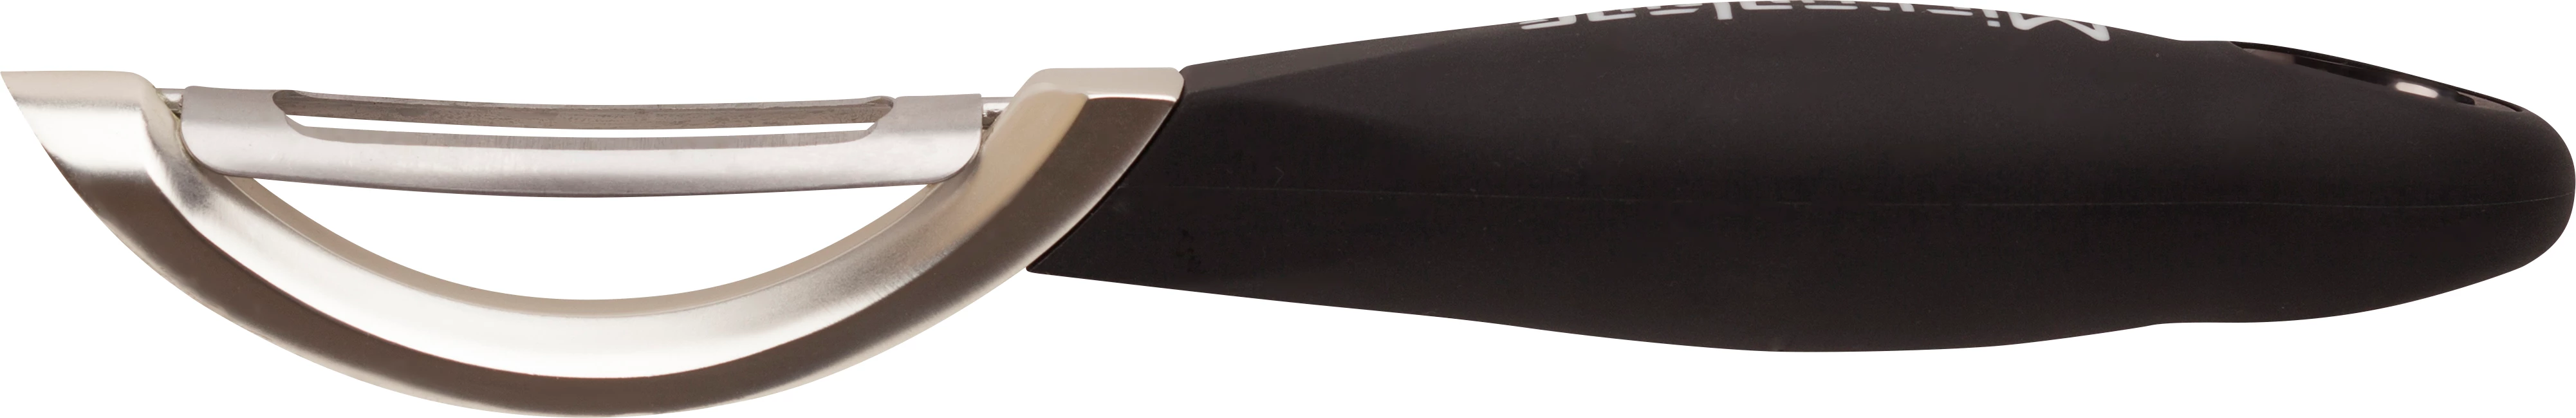 Microplane skrællekniv med vip, dobbelt